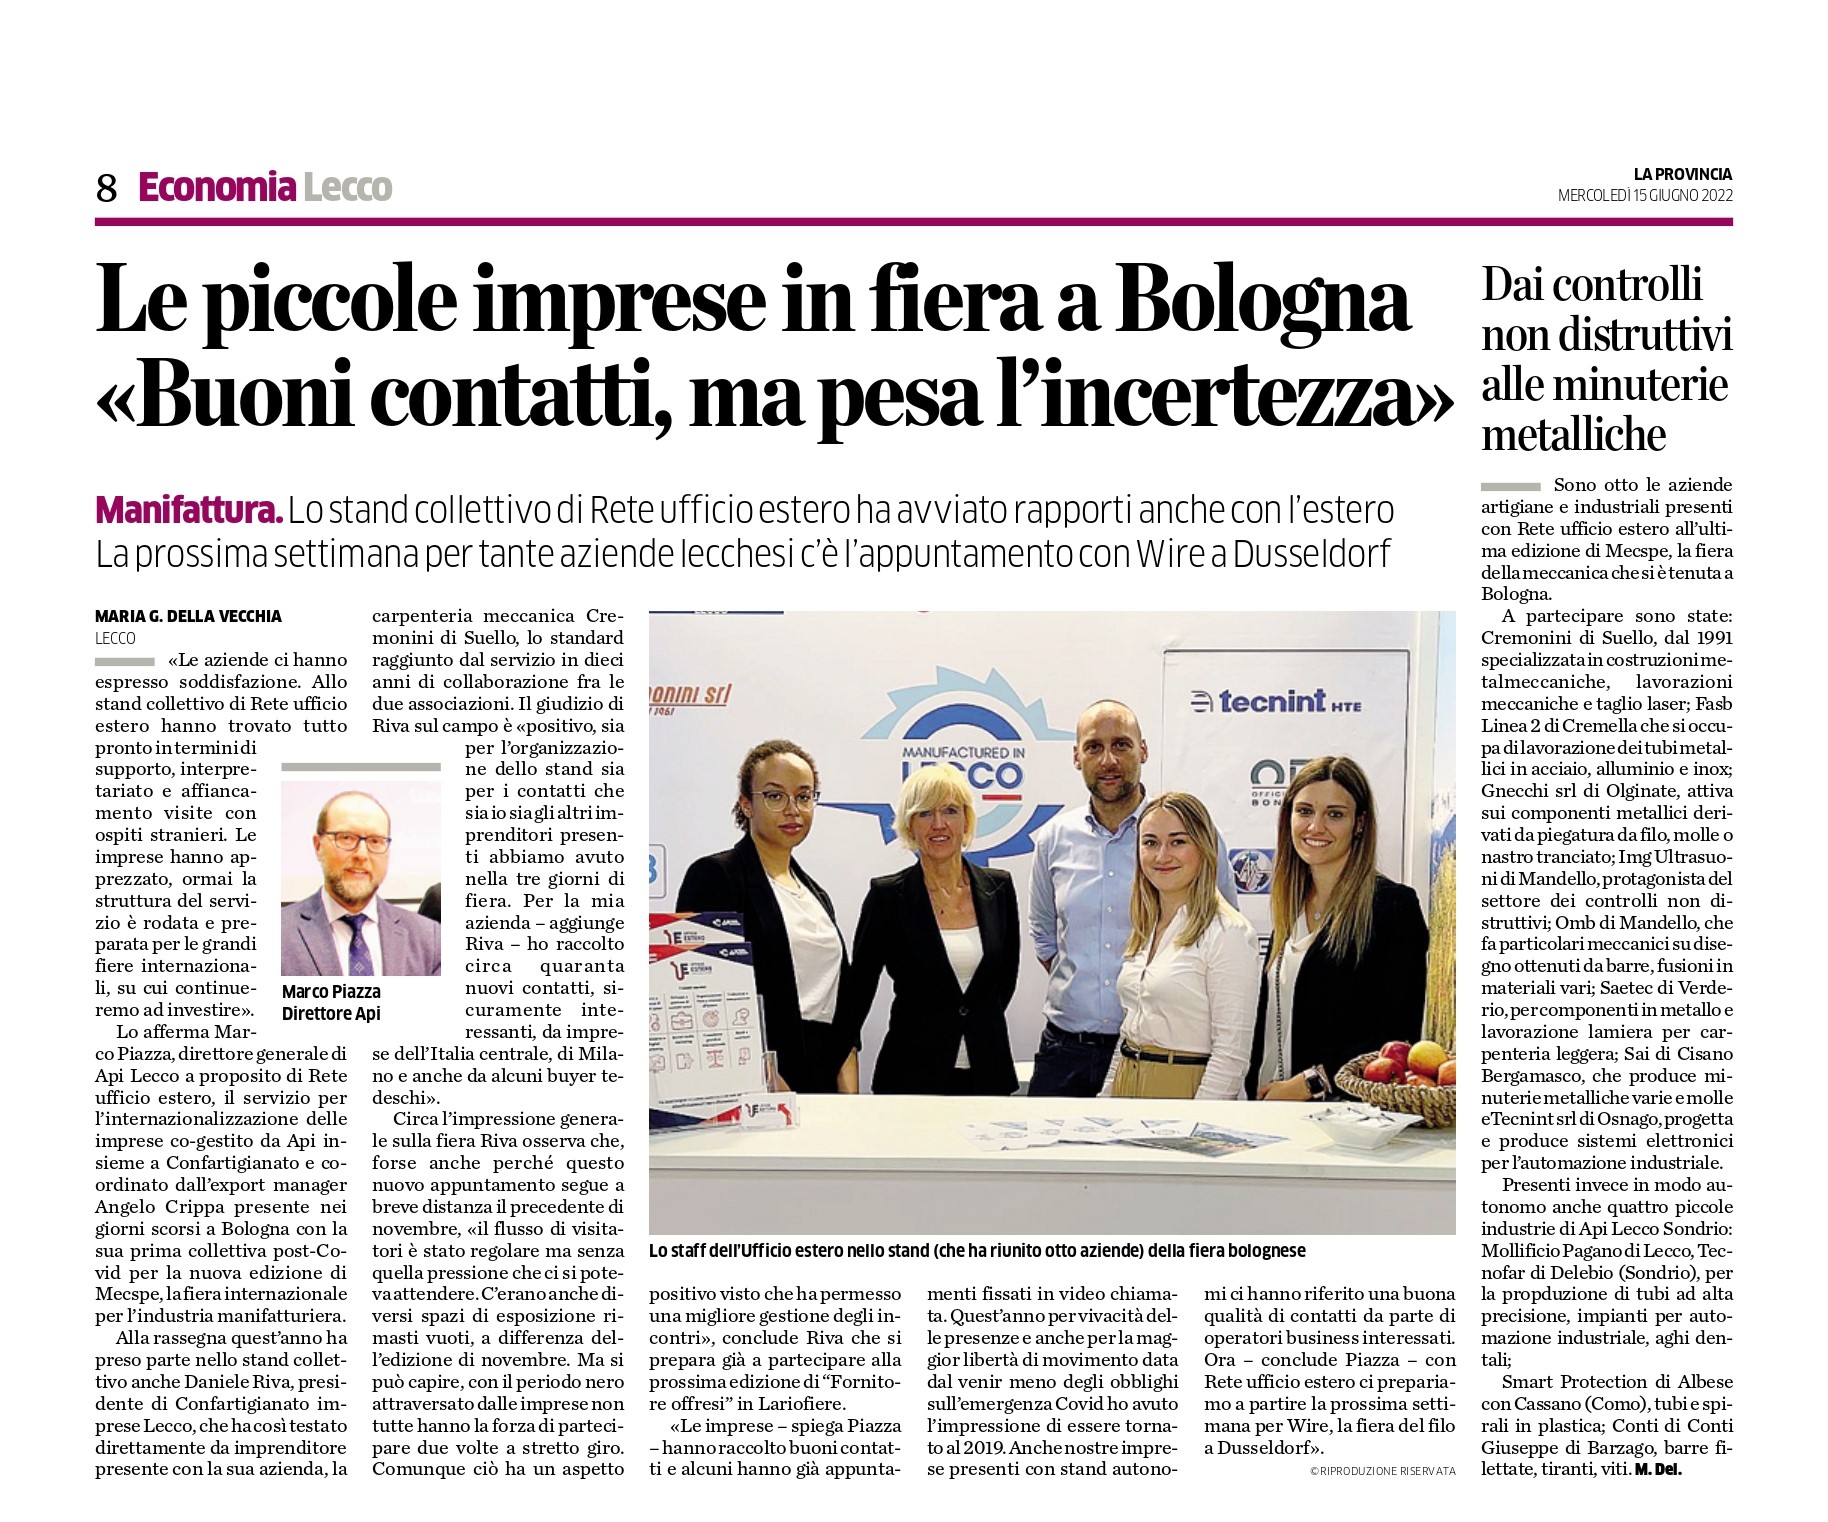 Le piccole imprese in fiera a Bologna: Buoni contatti, ma pesa l'incertezza